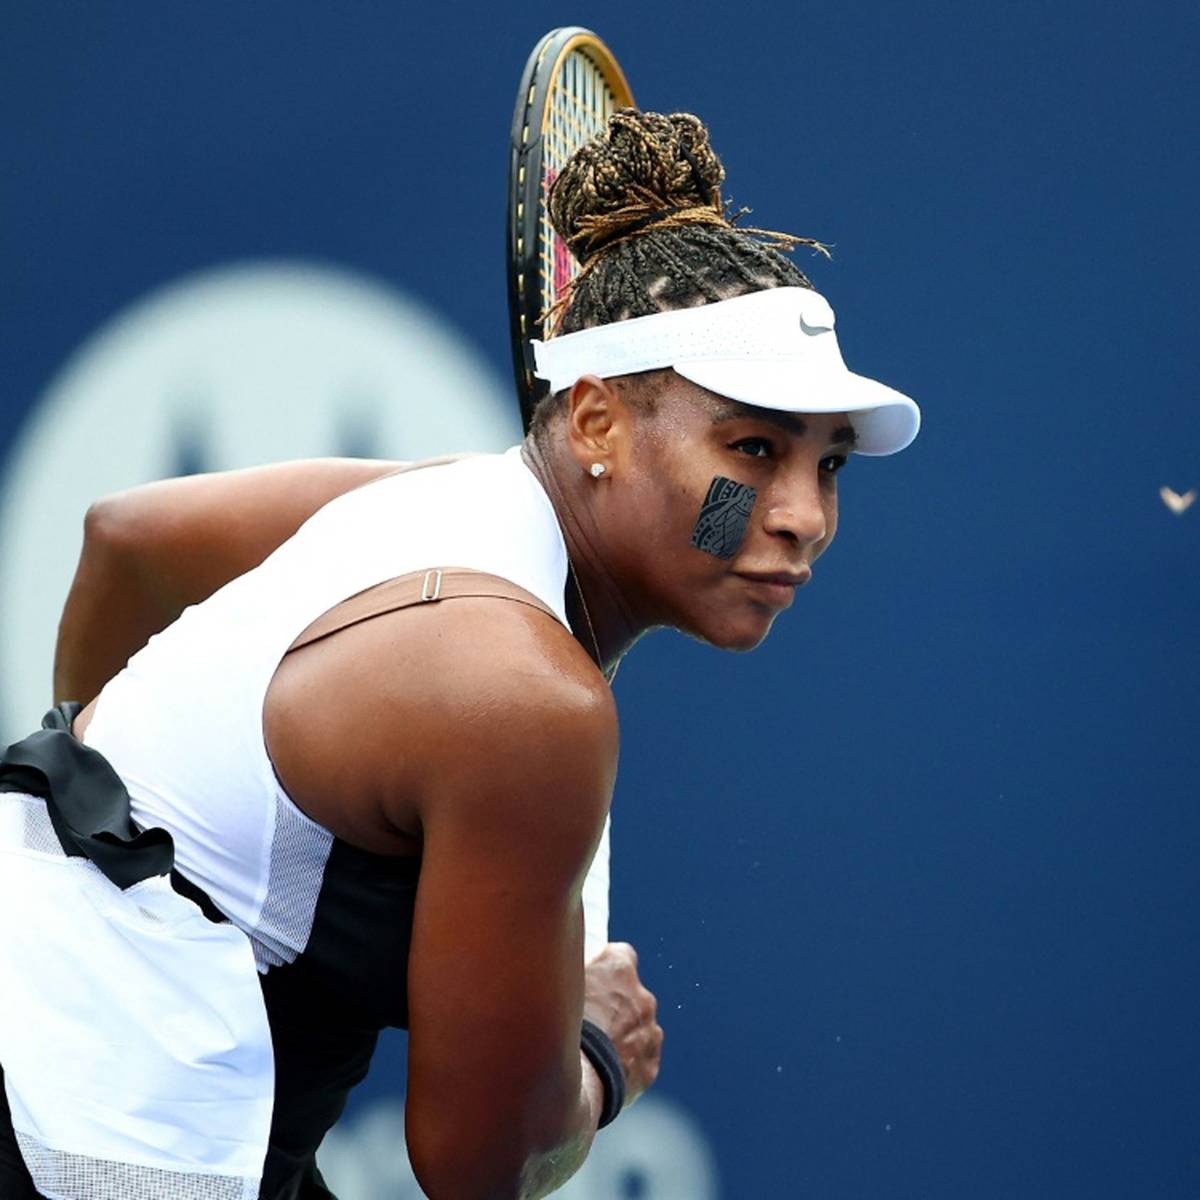 Serena Williams wird offenbar in Kürze ihre außerordentliche Tennis-Karriere beenden. Dies deutete die 40 Jahre alte 23-malige Grand-Slam-Siegerin bei Instagram an.